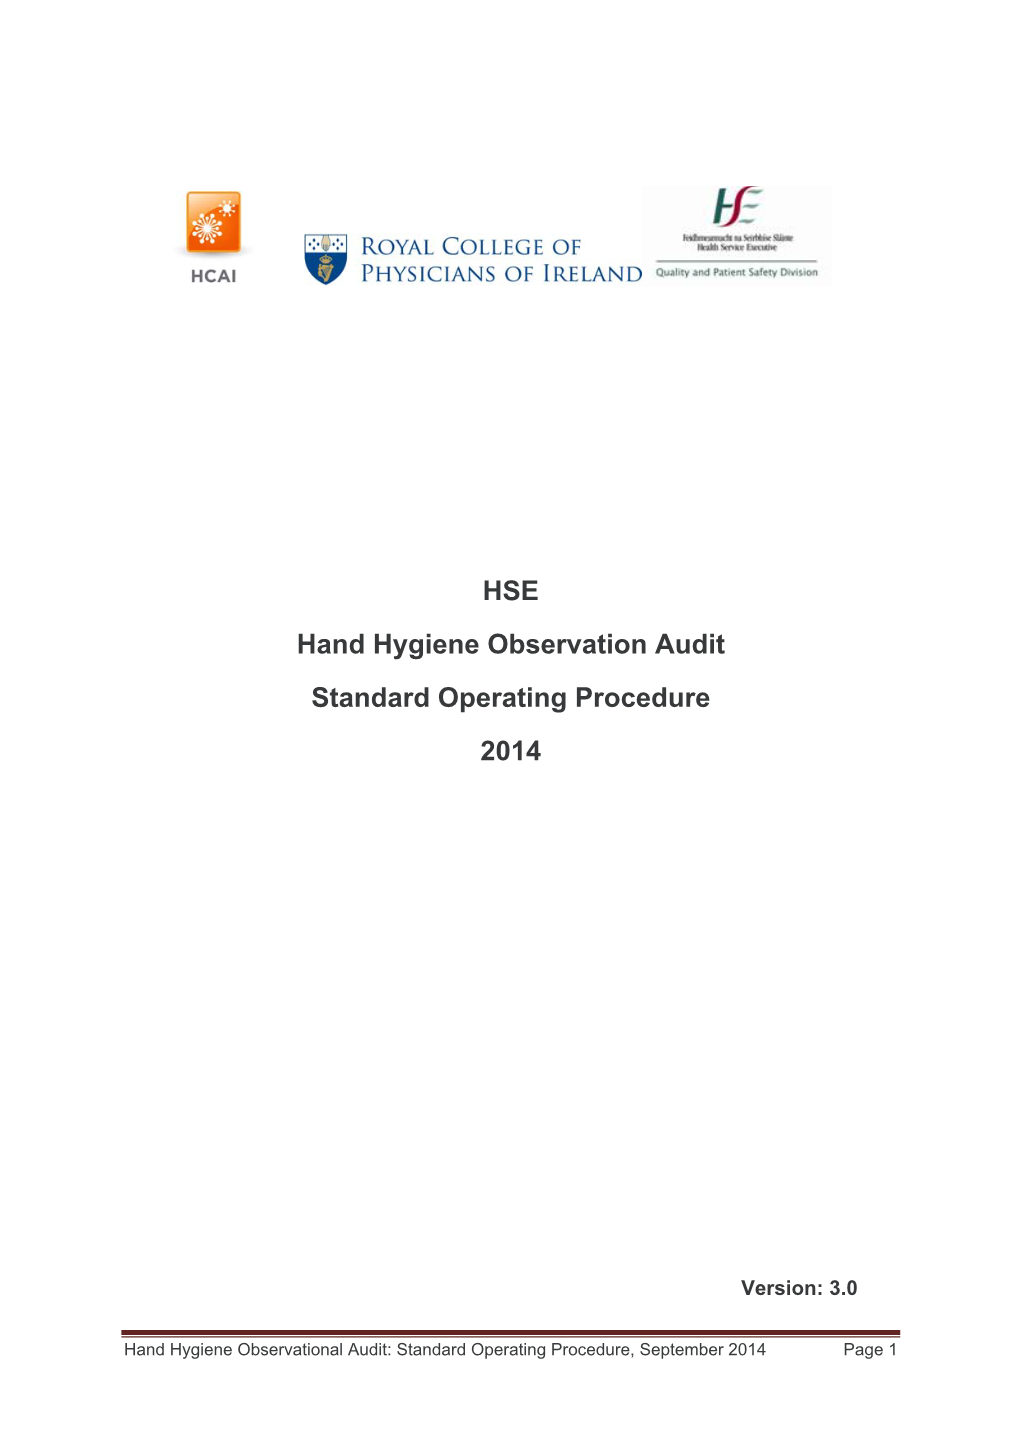 HSE Hand Hygiene Observation Audit Standard Operating Procedure 2014